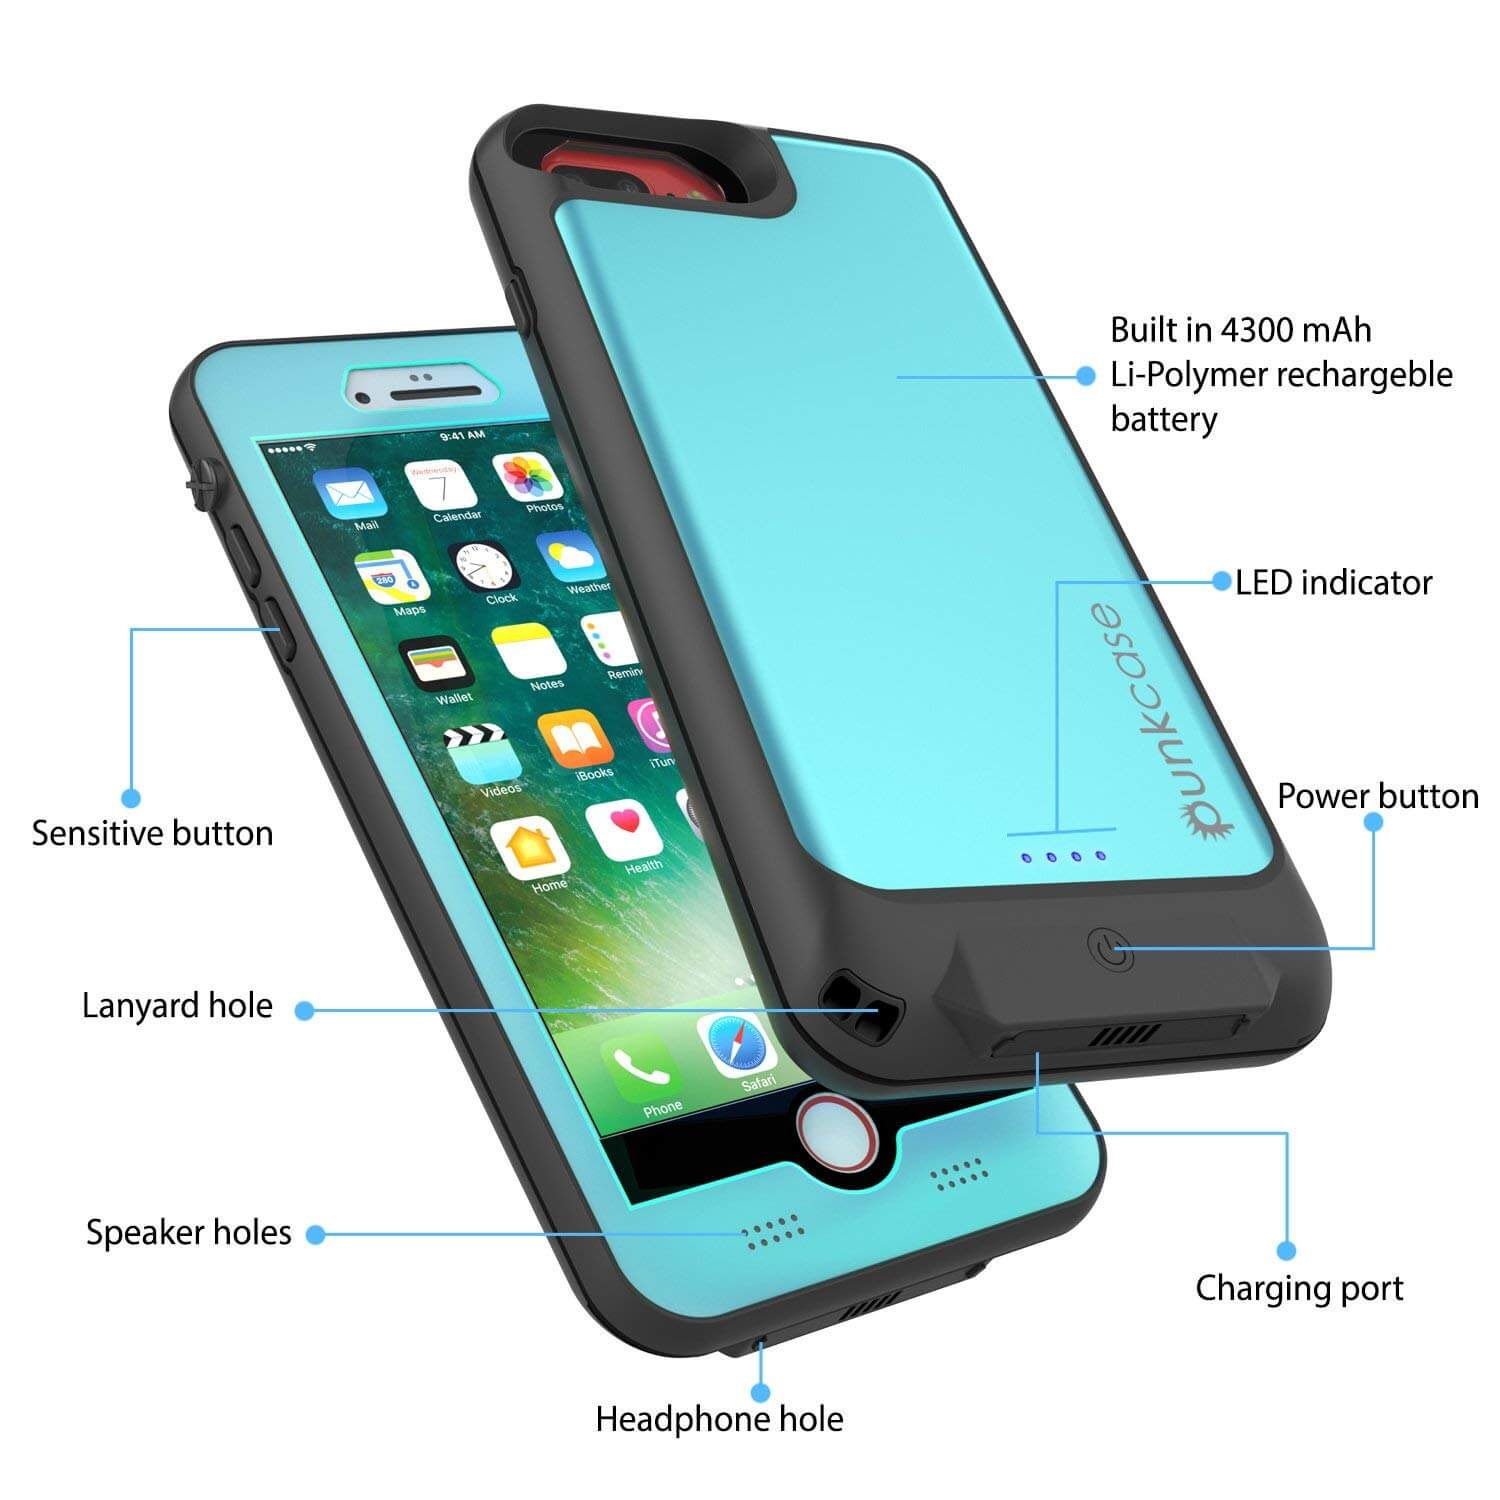 PunkJuice iPhone 8+/7+Plus  Plus Battery Case Teal - Waterproof Slim Power Juice Bank with 4300mAh